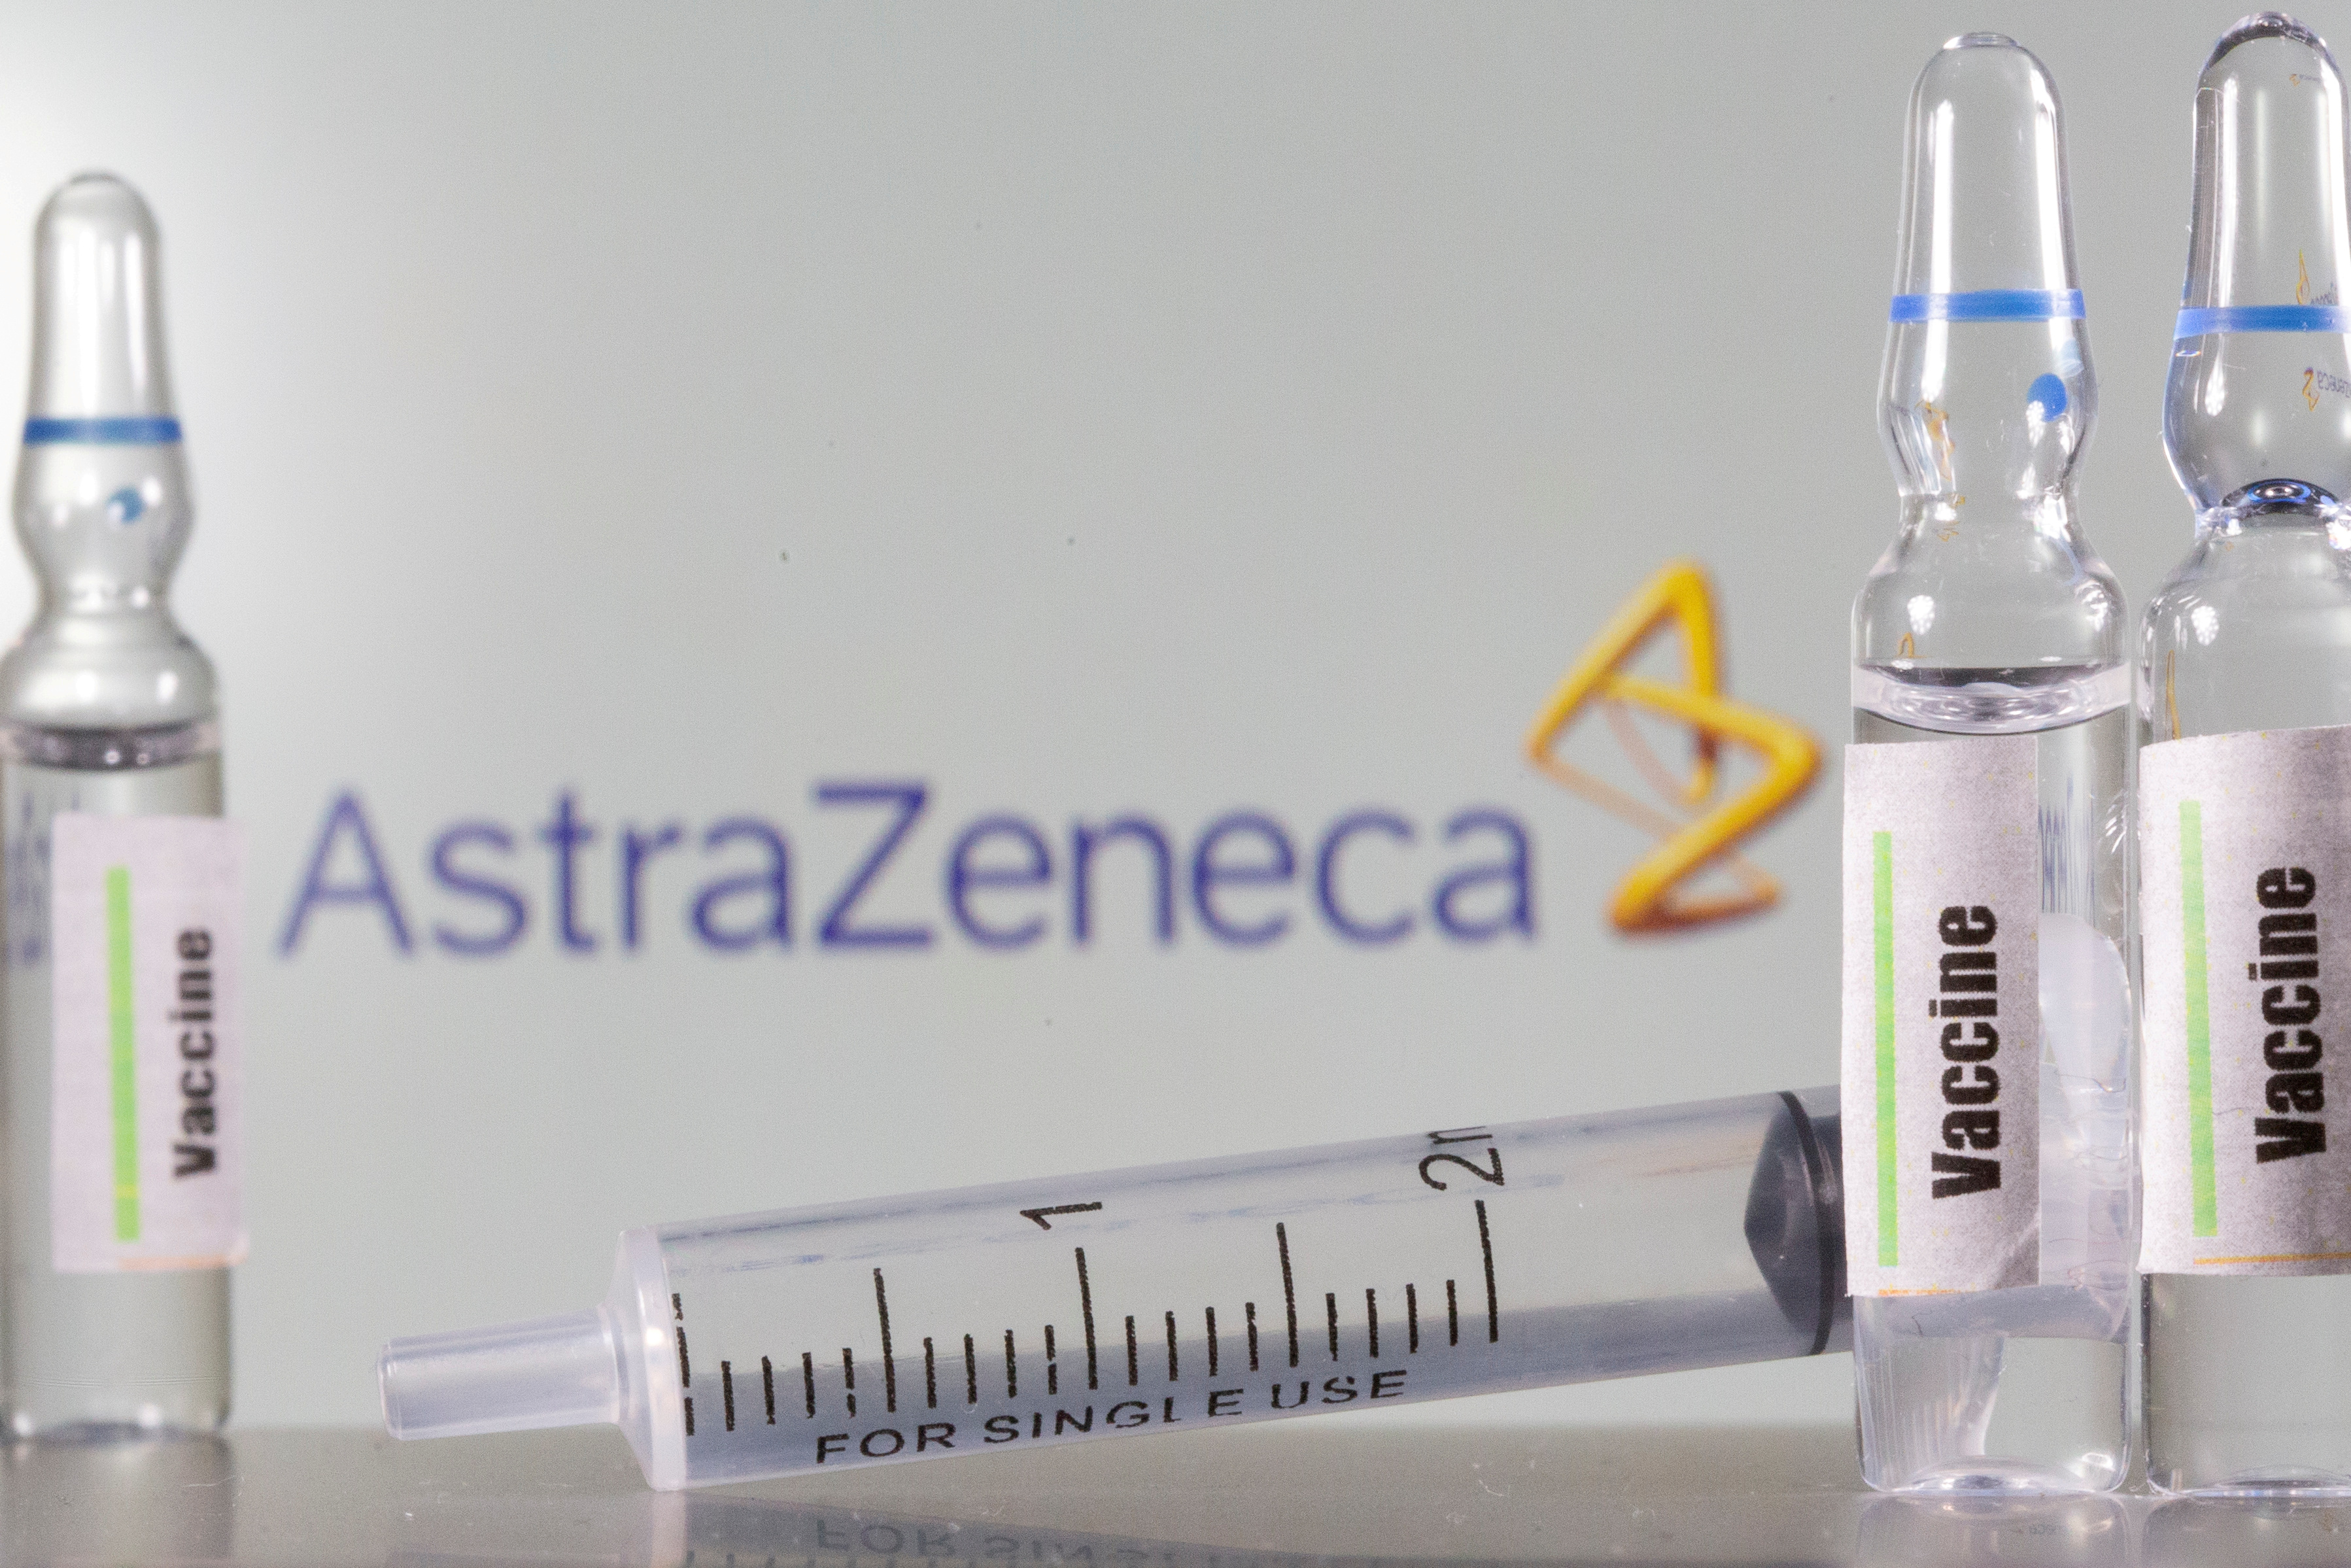 Ayer, AstraZeneca logró la aprobación de su vacuna en Reino Unido y Argentina - REUTERS/Dado Ruvic/Illustration/File Photo